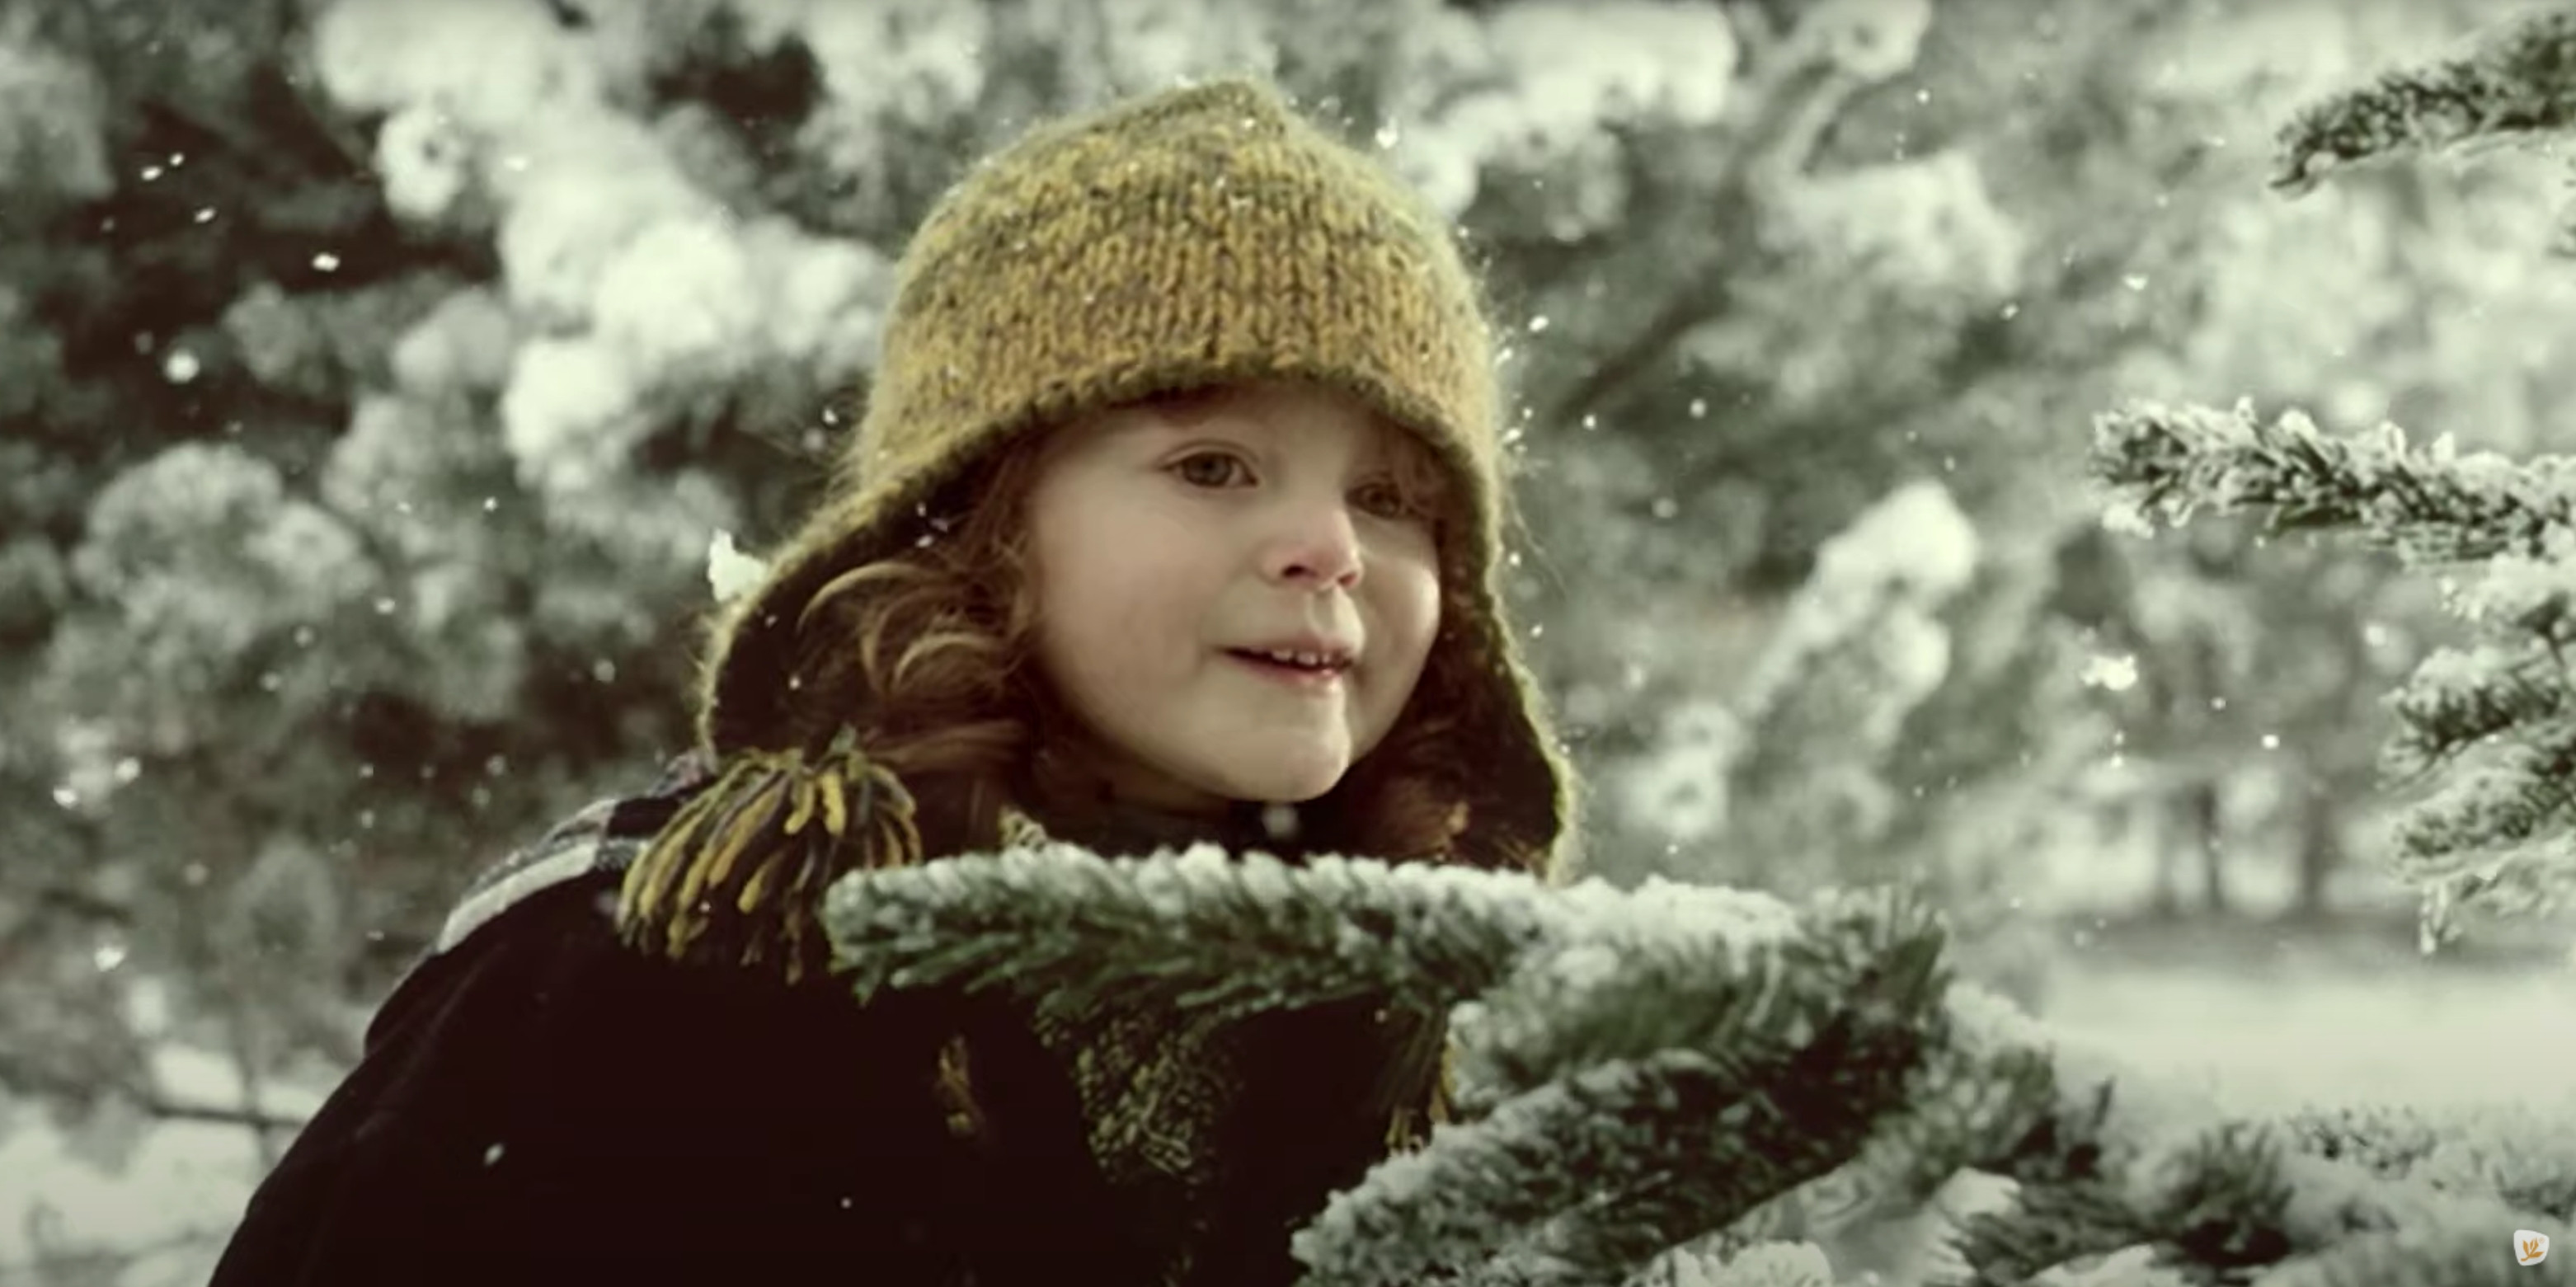 Prasátko od Kofoly přiběhne na obrazovku i letos. Vánoční reklama představí limitovanou edici s příchutí cukroví